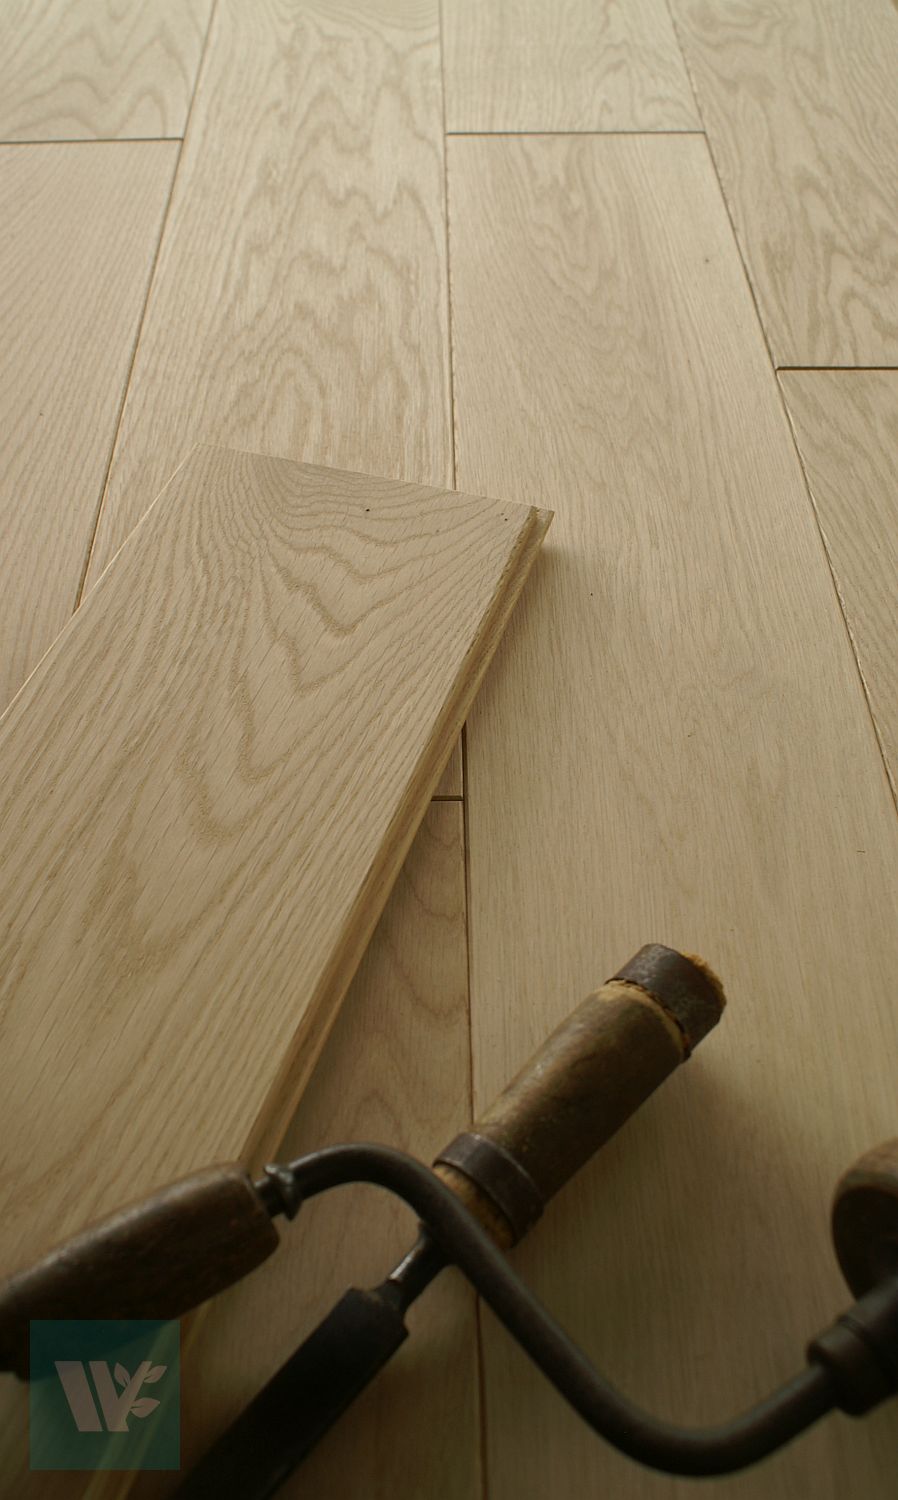 150x15mm Solid Oak Wood Floorboards Sanded Unfinished Microbevelled Prime D15p Ebay